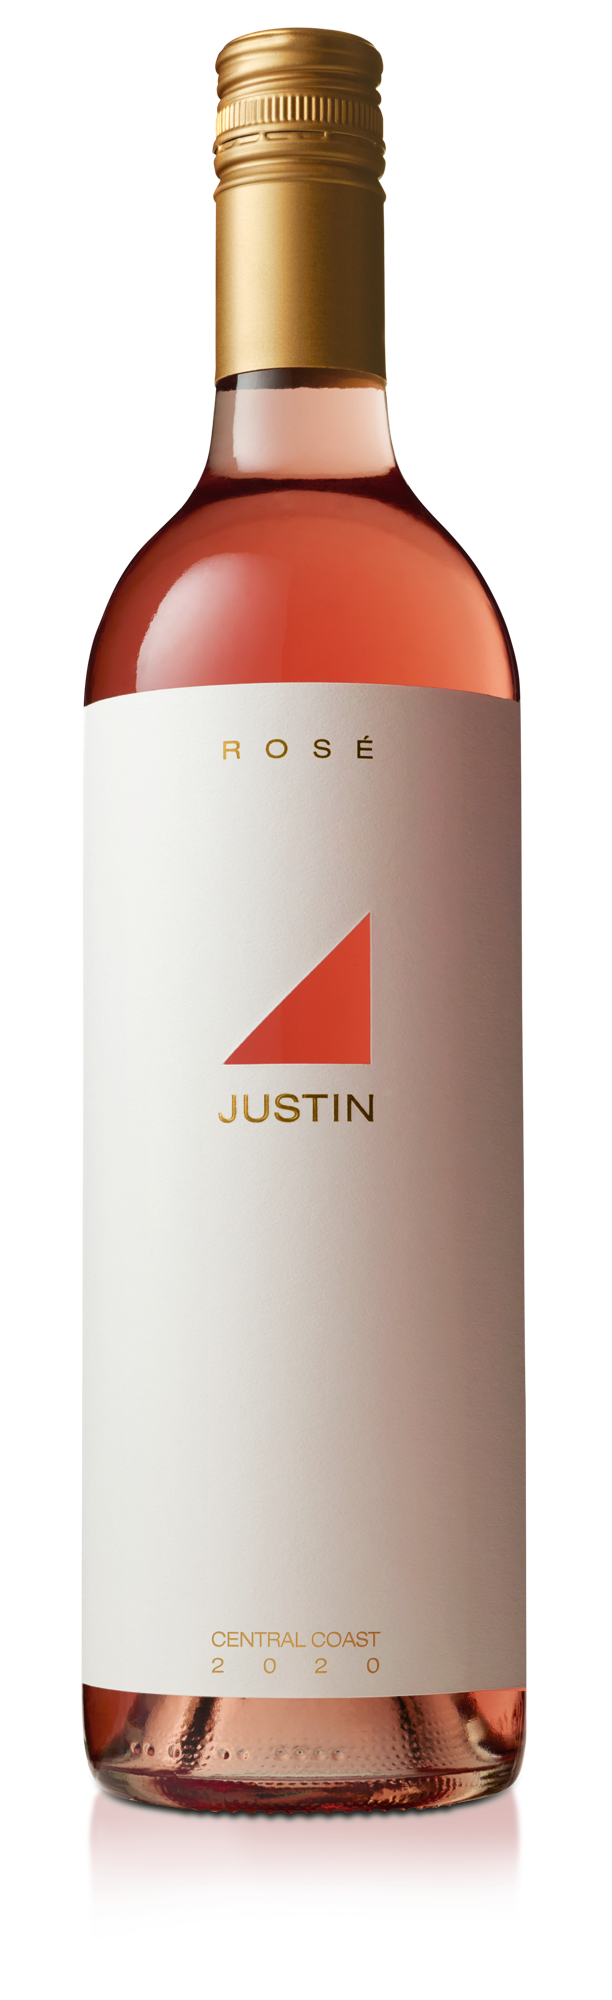 justin rose bottle